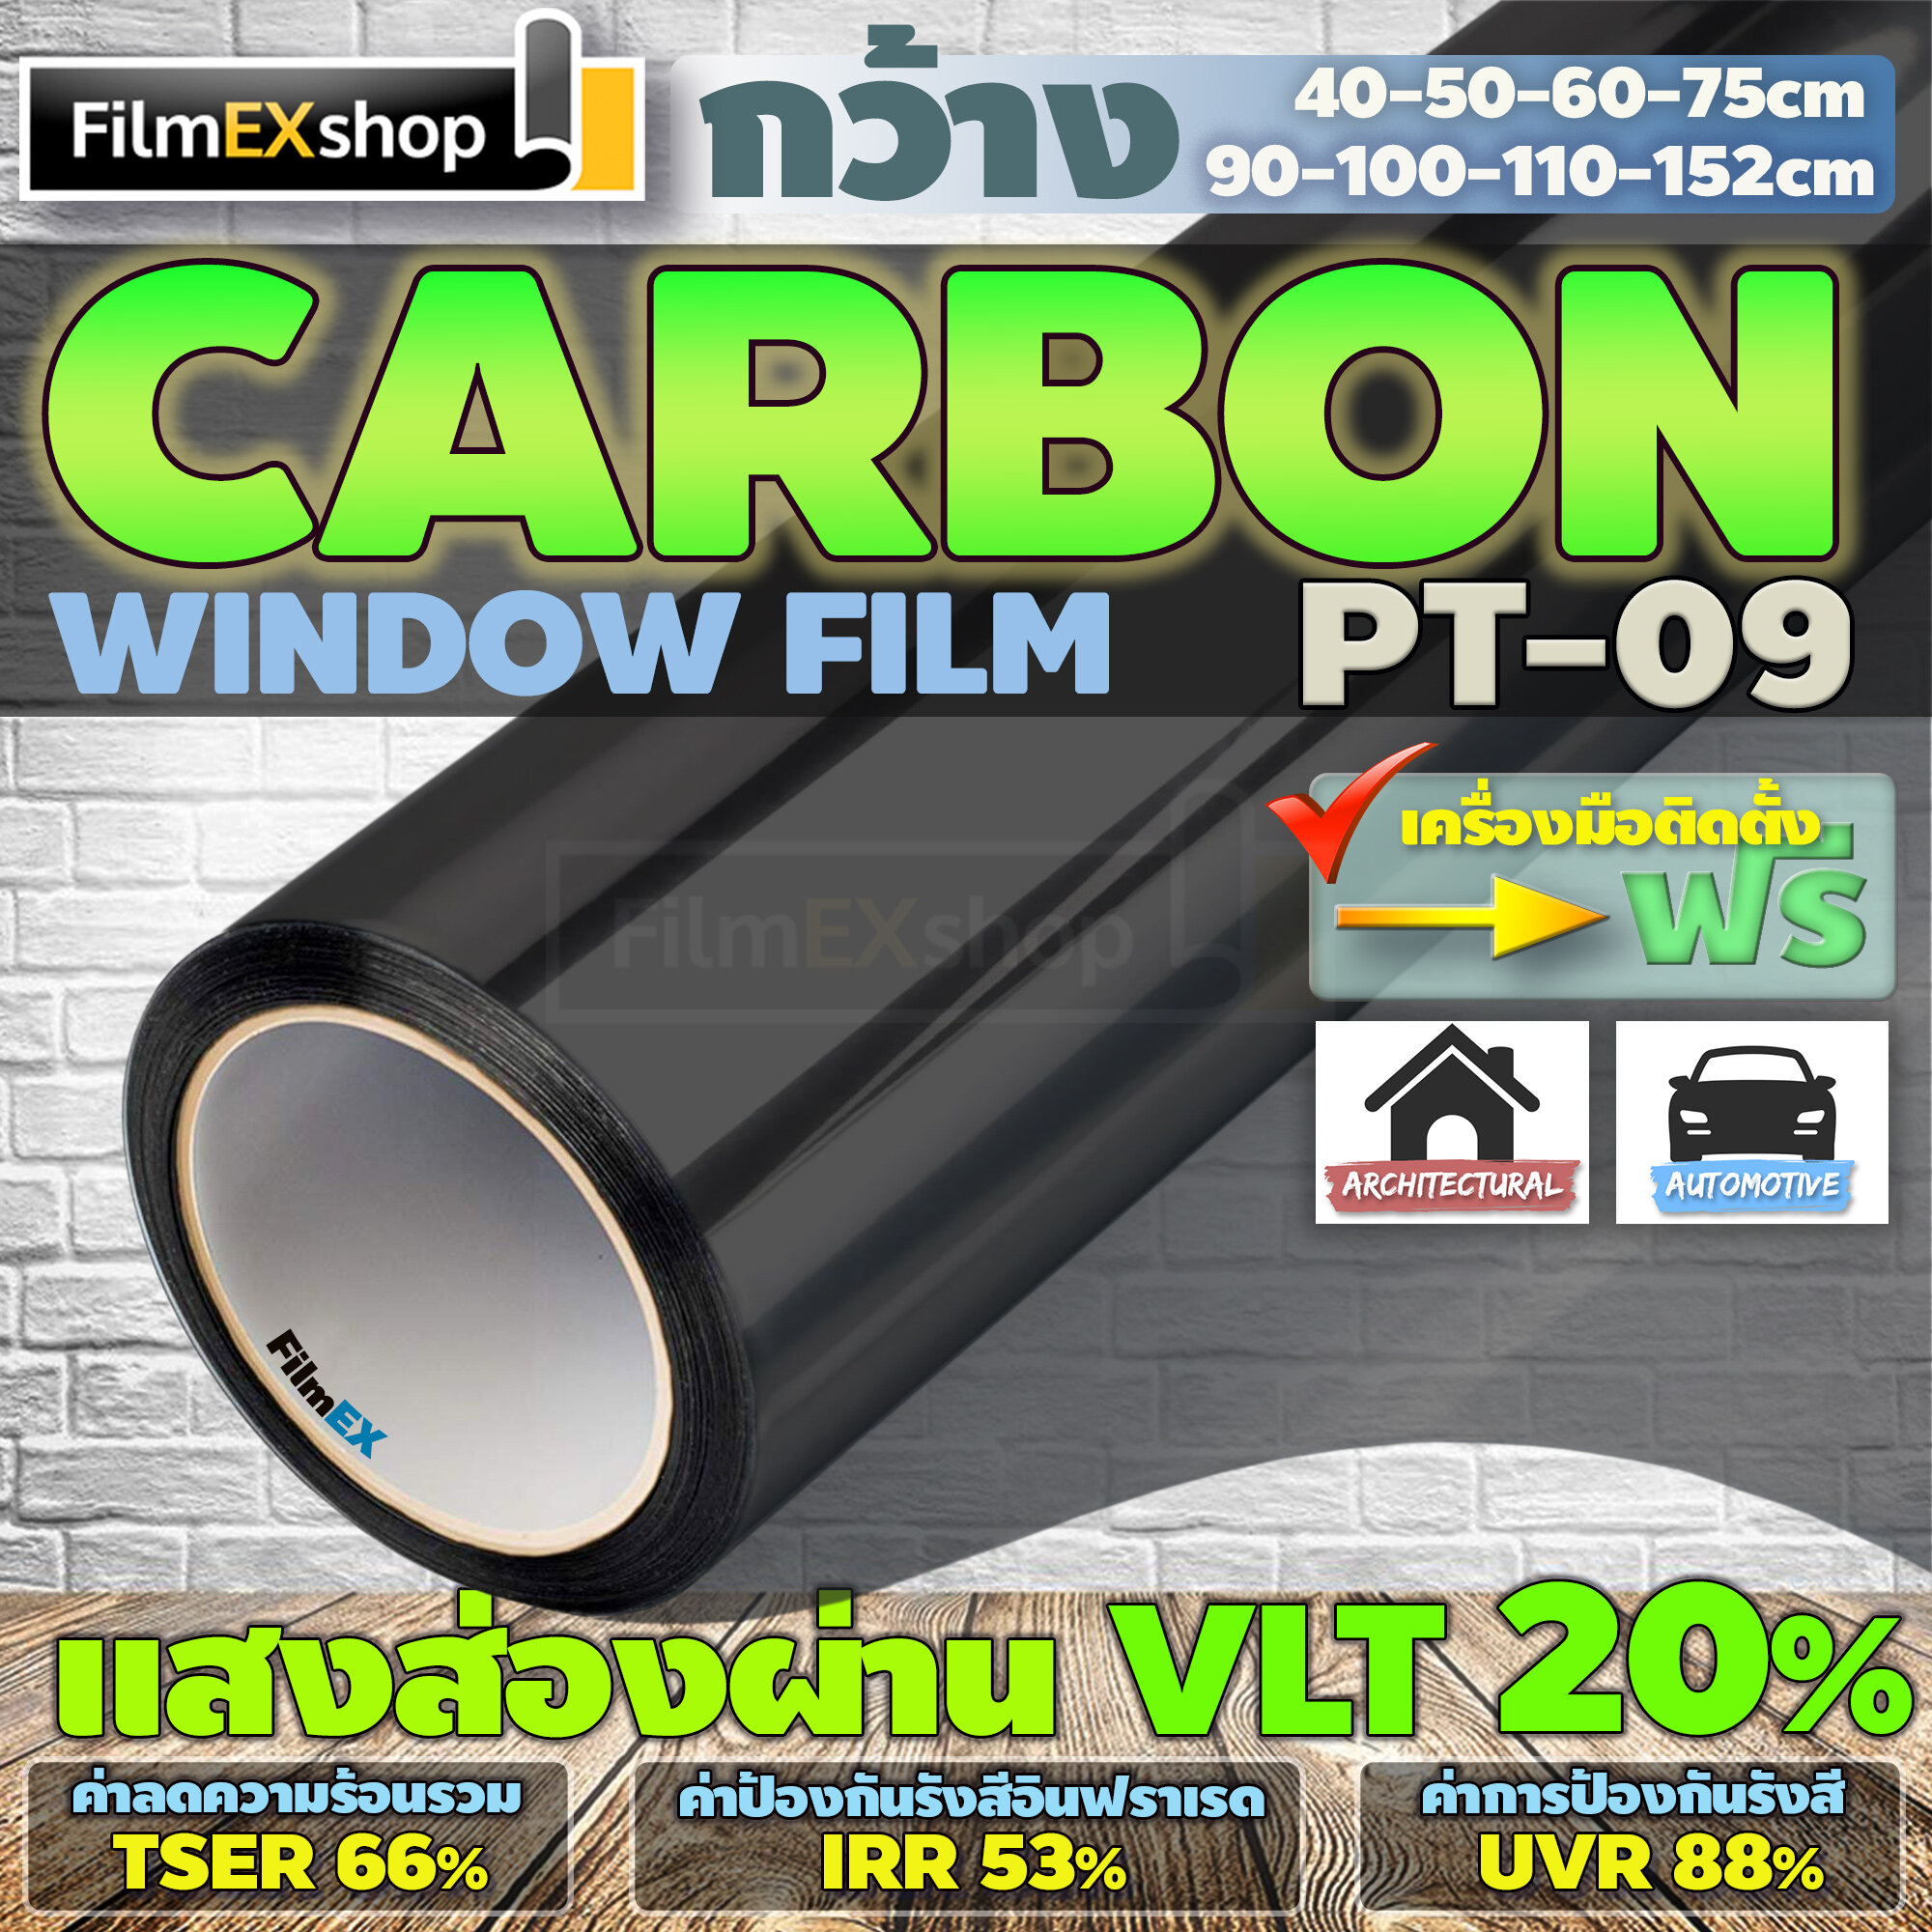 PT-09  VLT 20%  ฟิล์มคาร์บอน Carbon Window Film ฟิล์มกรองแสง ฟิล์มติดกระจก ฟิล์มกรองแสงรถยนต์ (ราคาต่อเมตร)